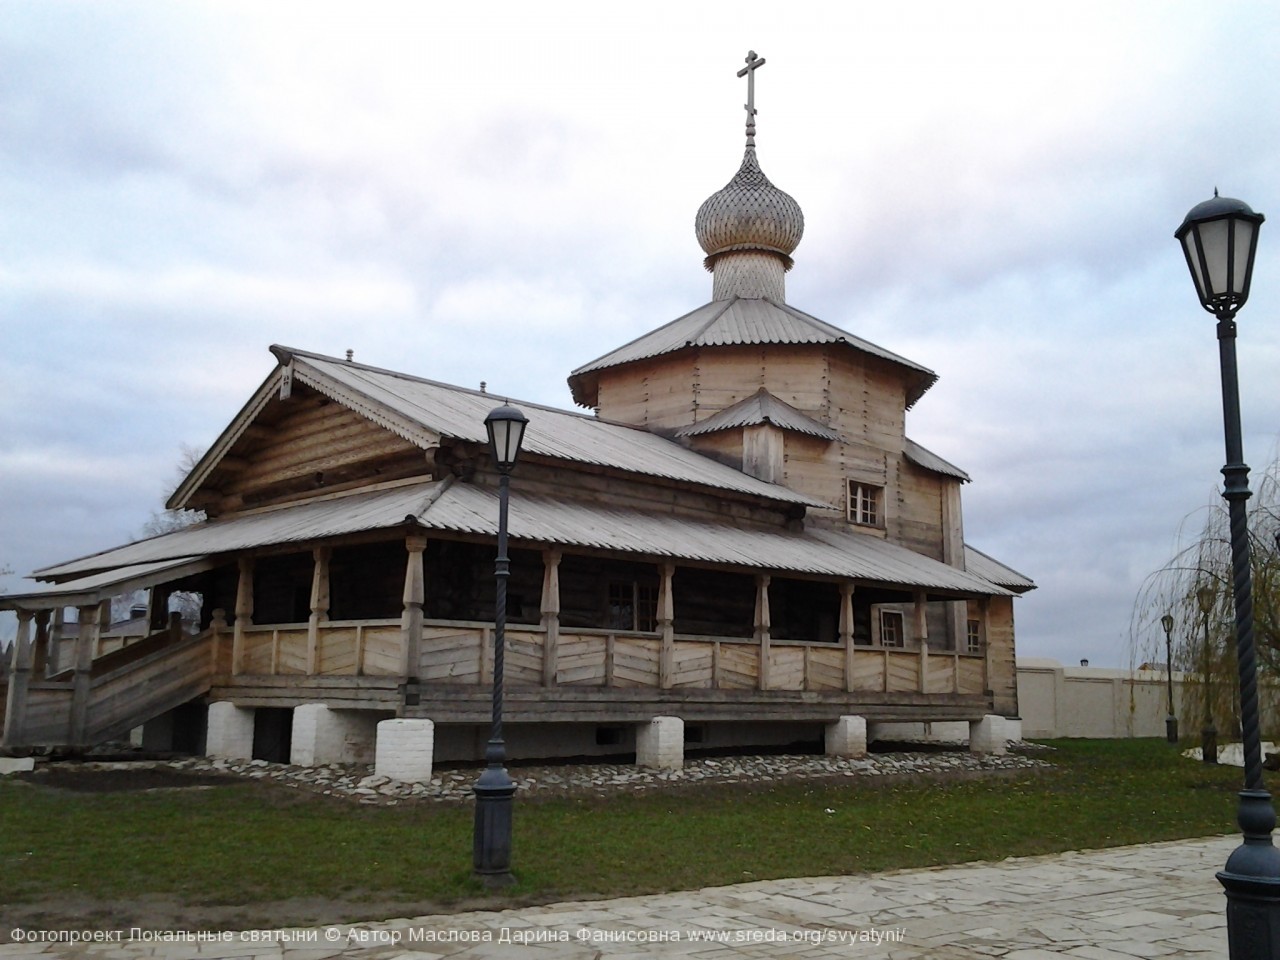 2.Деревянная Троицкая церковь Троицко-Сергиевского монастыря